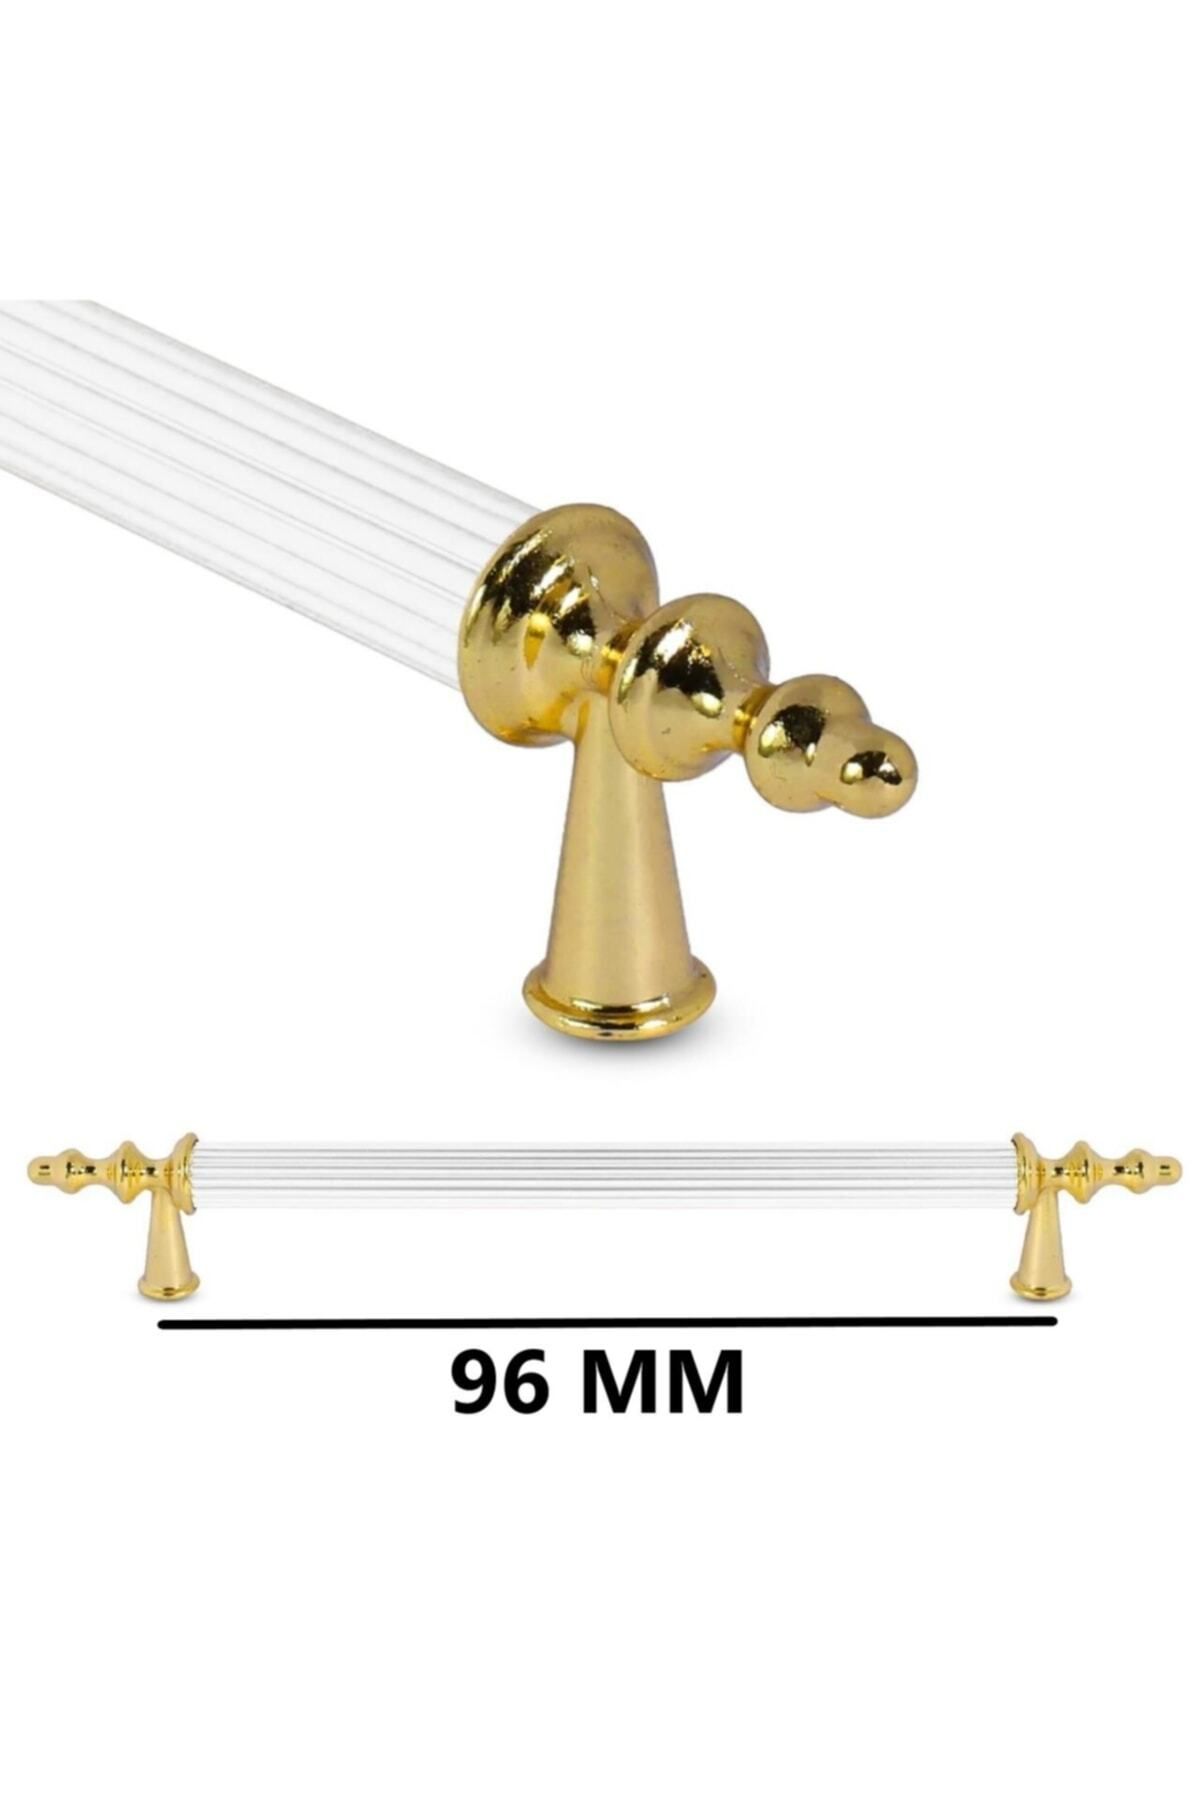 Nobel Ovacık Altın Beyaz 96 Mm Dolap Çekmece Mobilya Kulp-nbovaalbe96mm